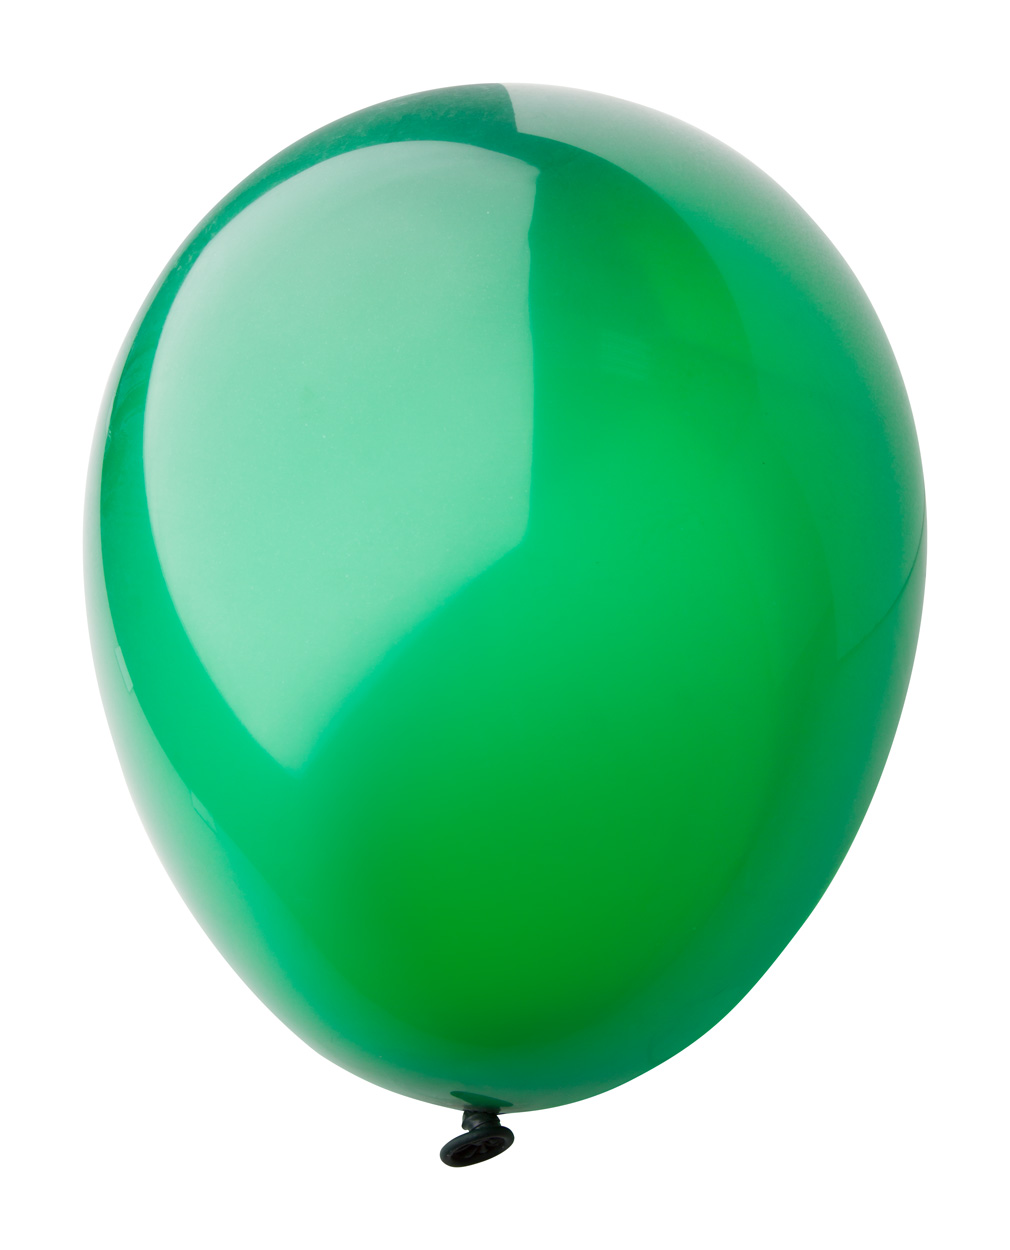 Надуваем зеленые воздушные шарики. Зеленый шарик. Зеленый воздушный шарик. Шарики зеленого цвета. Салатовый шарик.